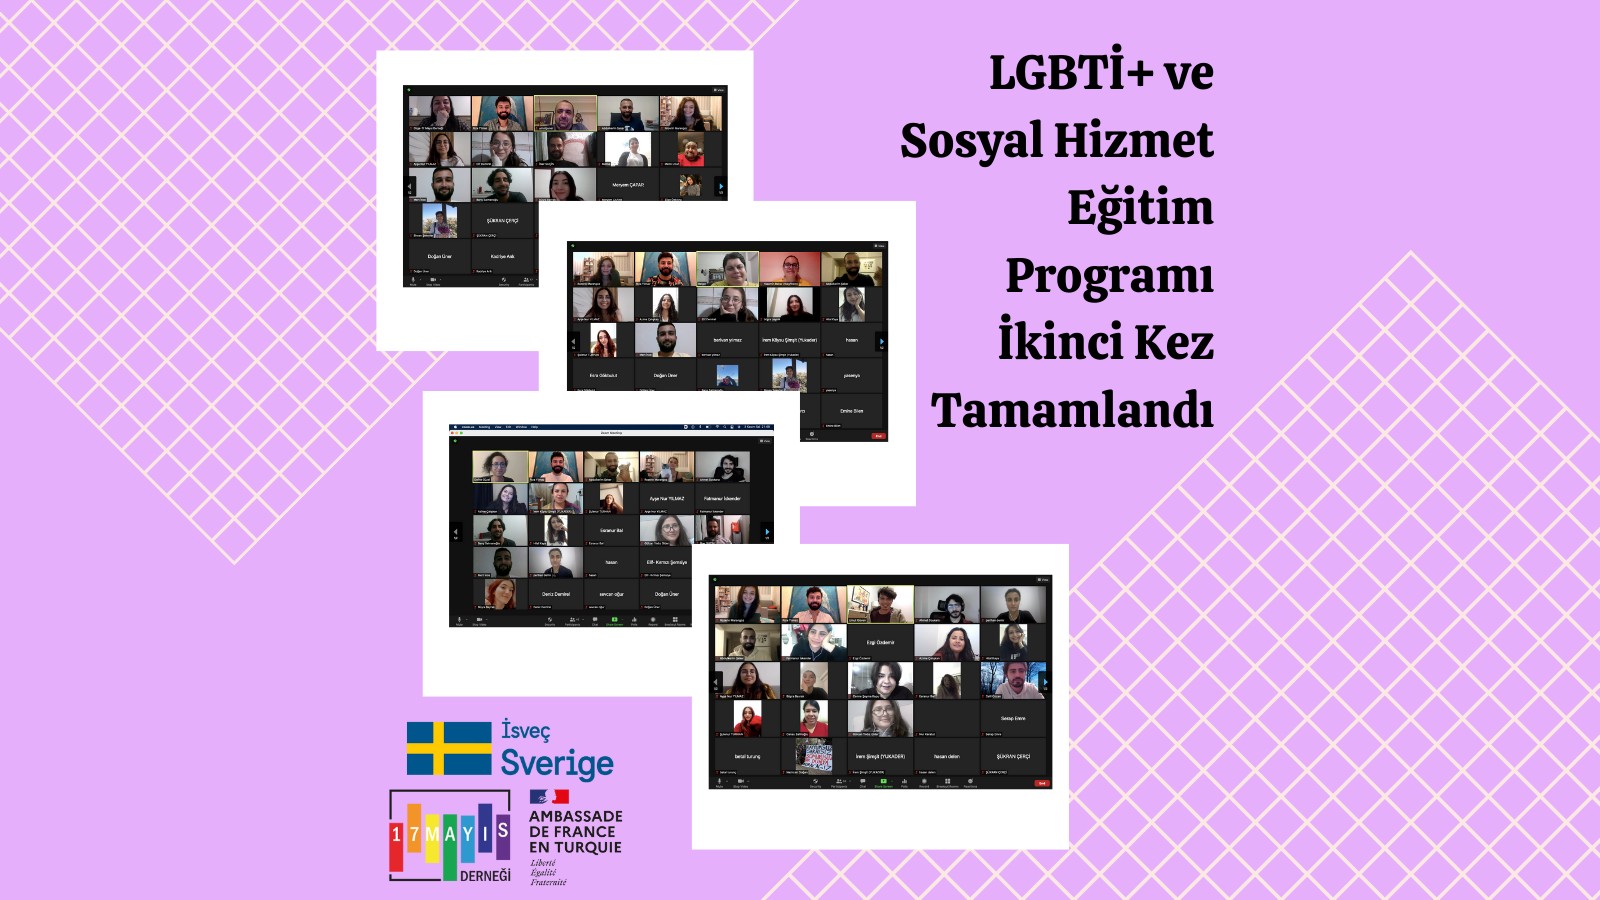 LGBTİ+ ve Sosyal Hizmet Eğitim Programı İkinci Kez Tamamlandı! - 17 Mayıs